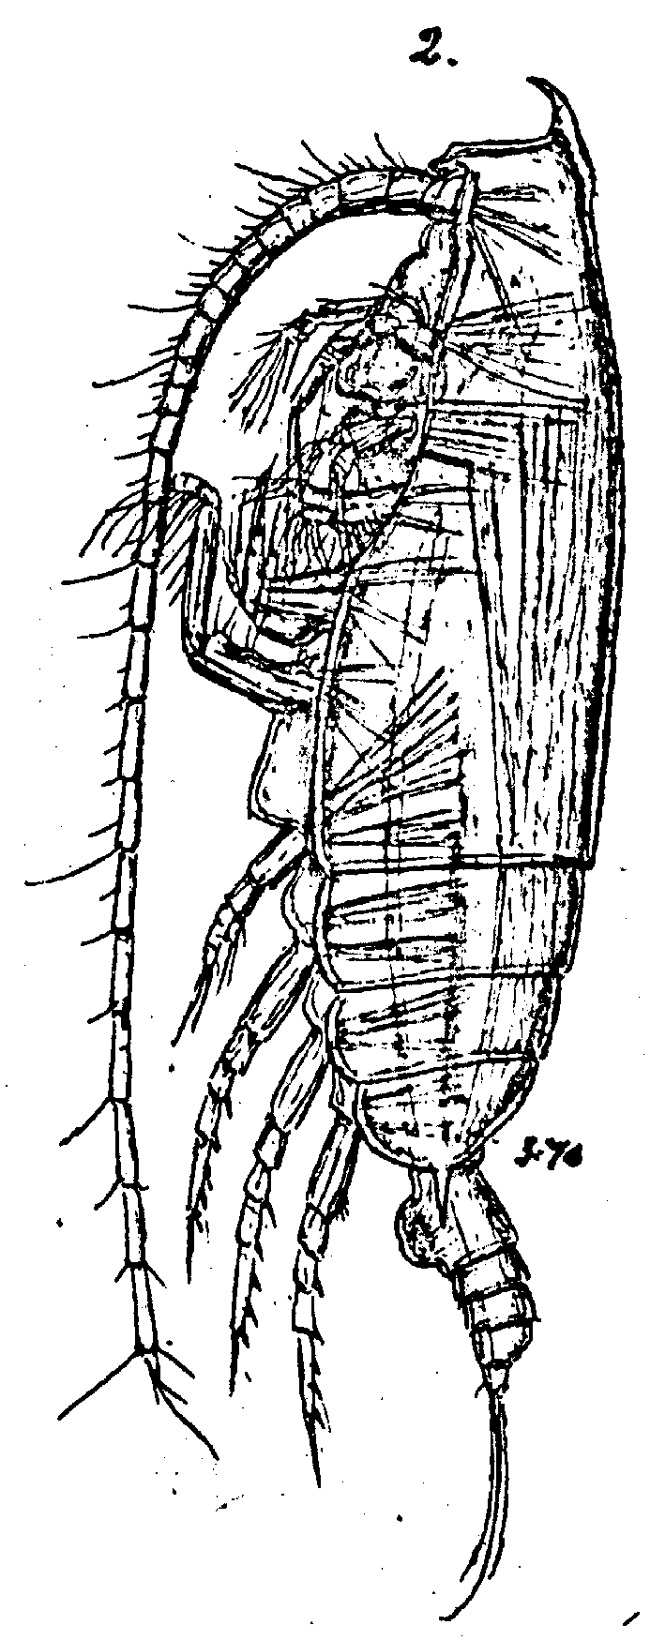 Espèce Gaetanus curvicornis - Planche 1 de figures morphologiques